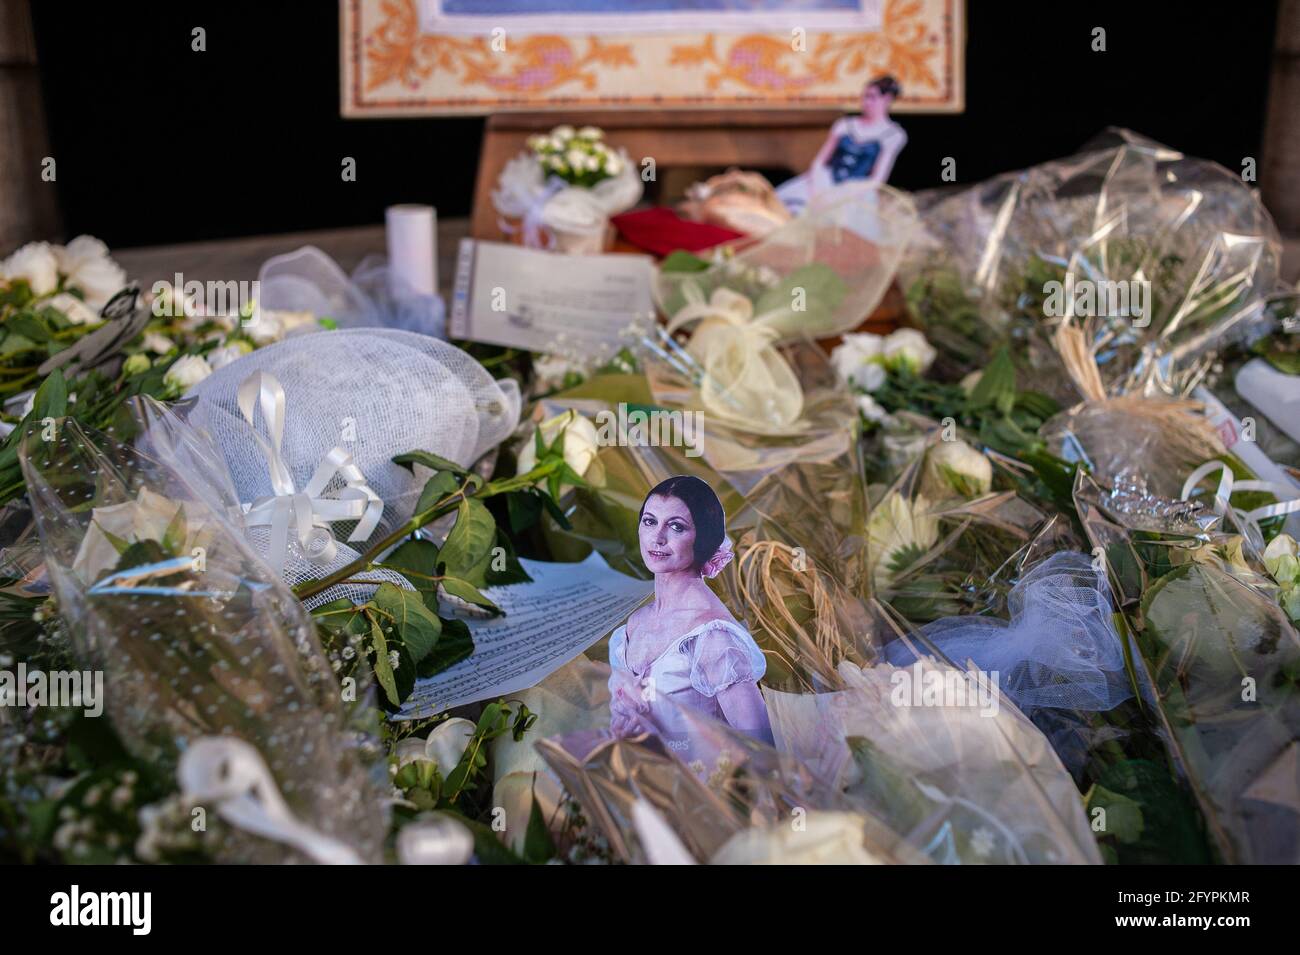 Rome, Italie 29/05/2021: Des messages, des fleurs et des photographies rendent hommage à la mémoire de Carla Fraci le jour de ses funérailles. Opéra de Rome. © Andrea Sabbadini Banque D'Images